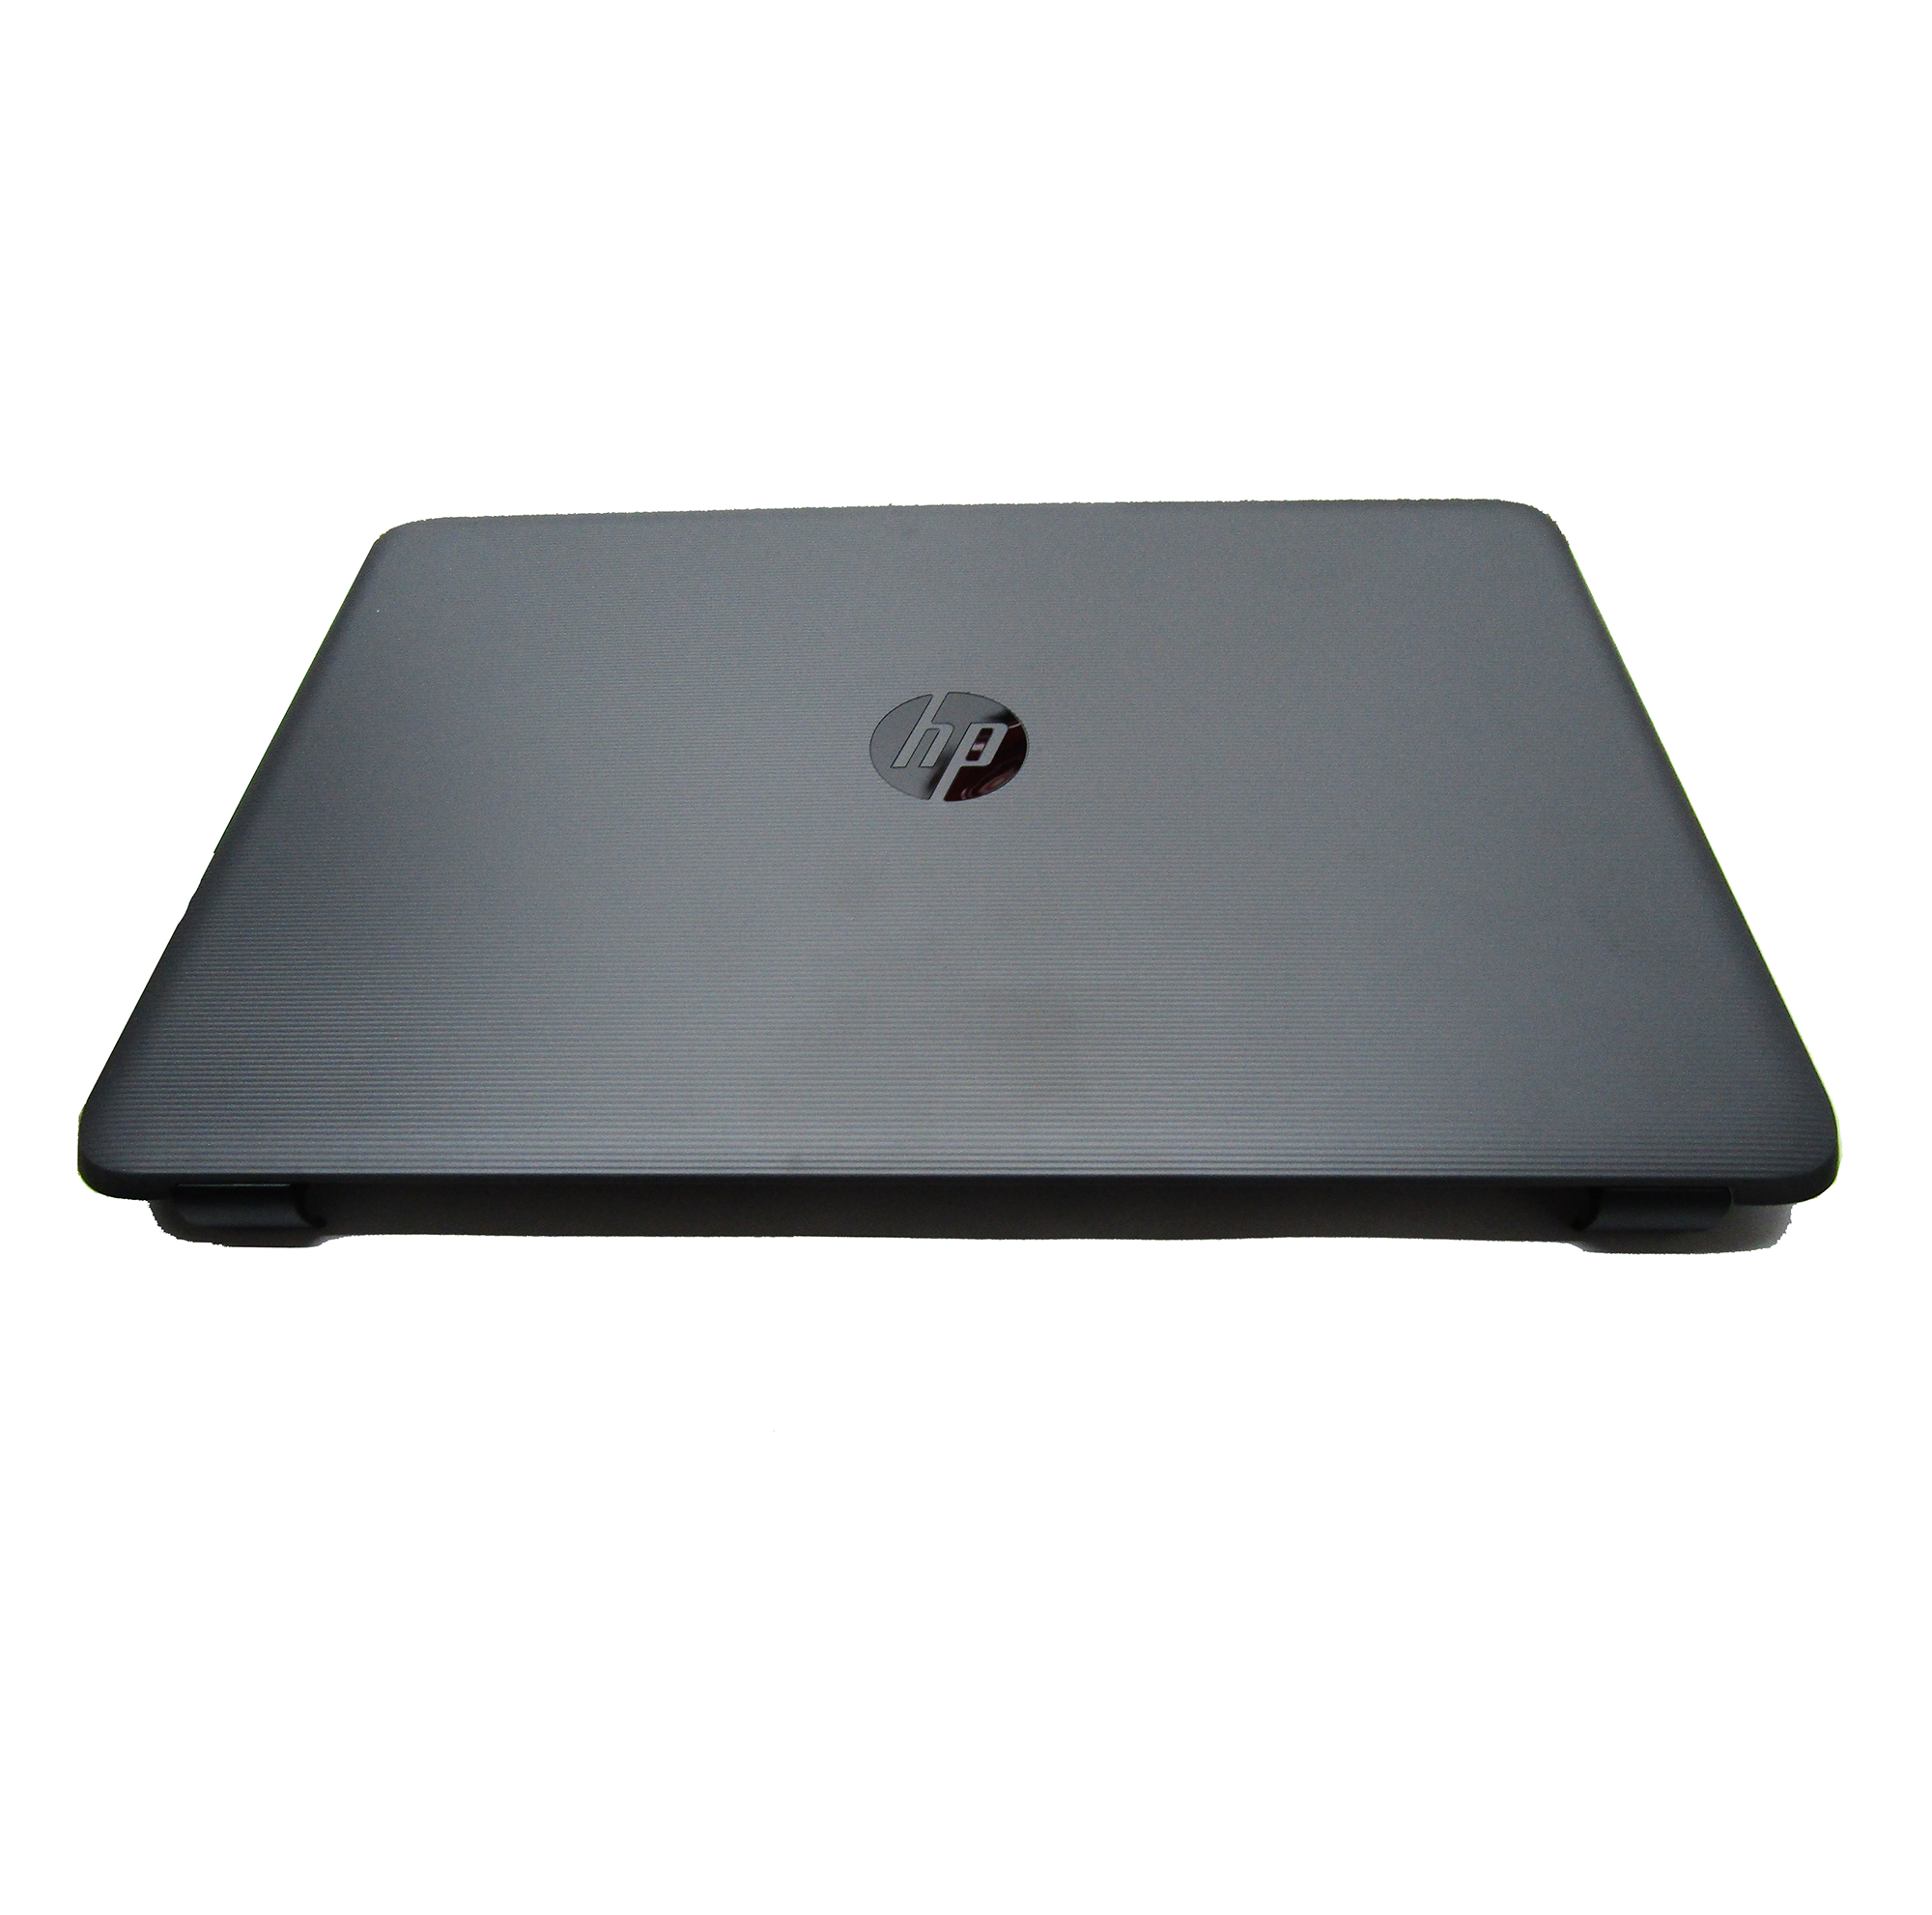 New Laptop Lcd Back Cover For HP Pavilion 15-AY |15-BA |15-AF | 250 255 G4 |250 255 G5. Part Number: 859511-001